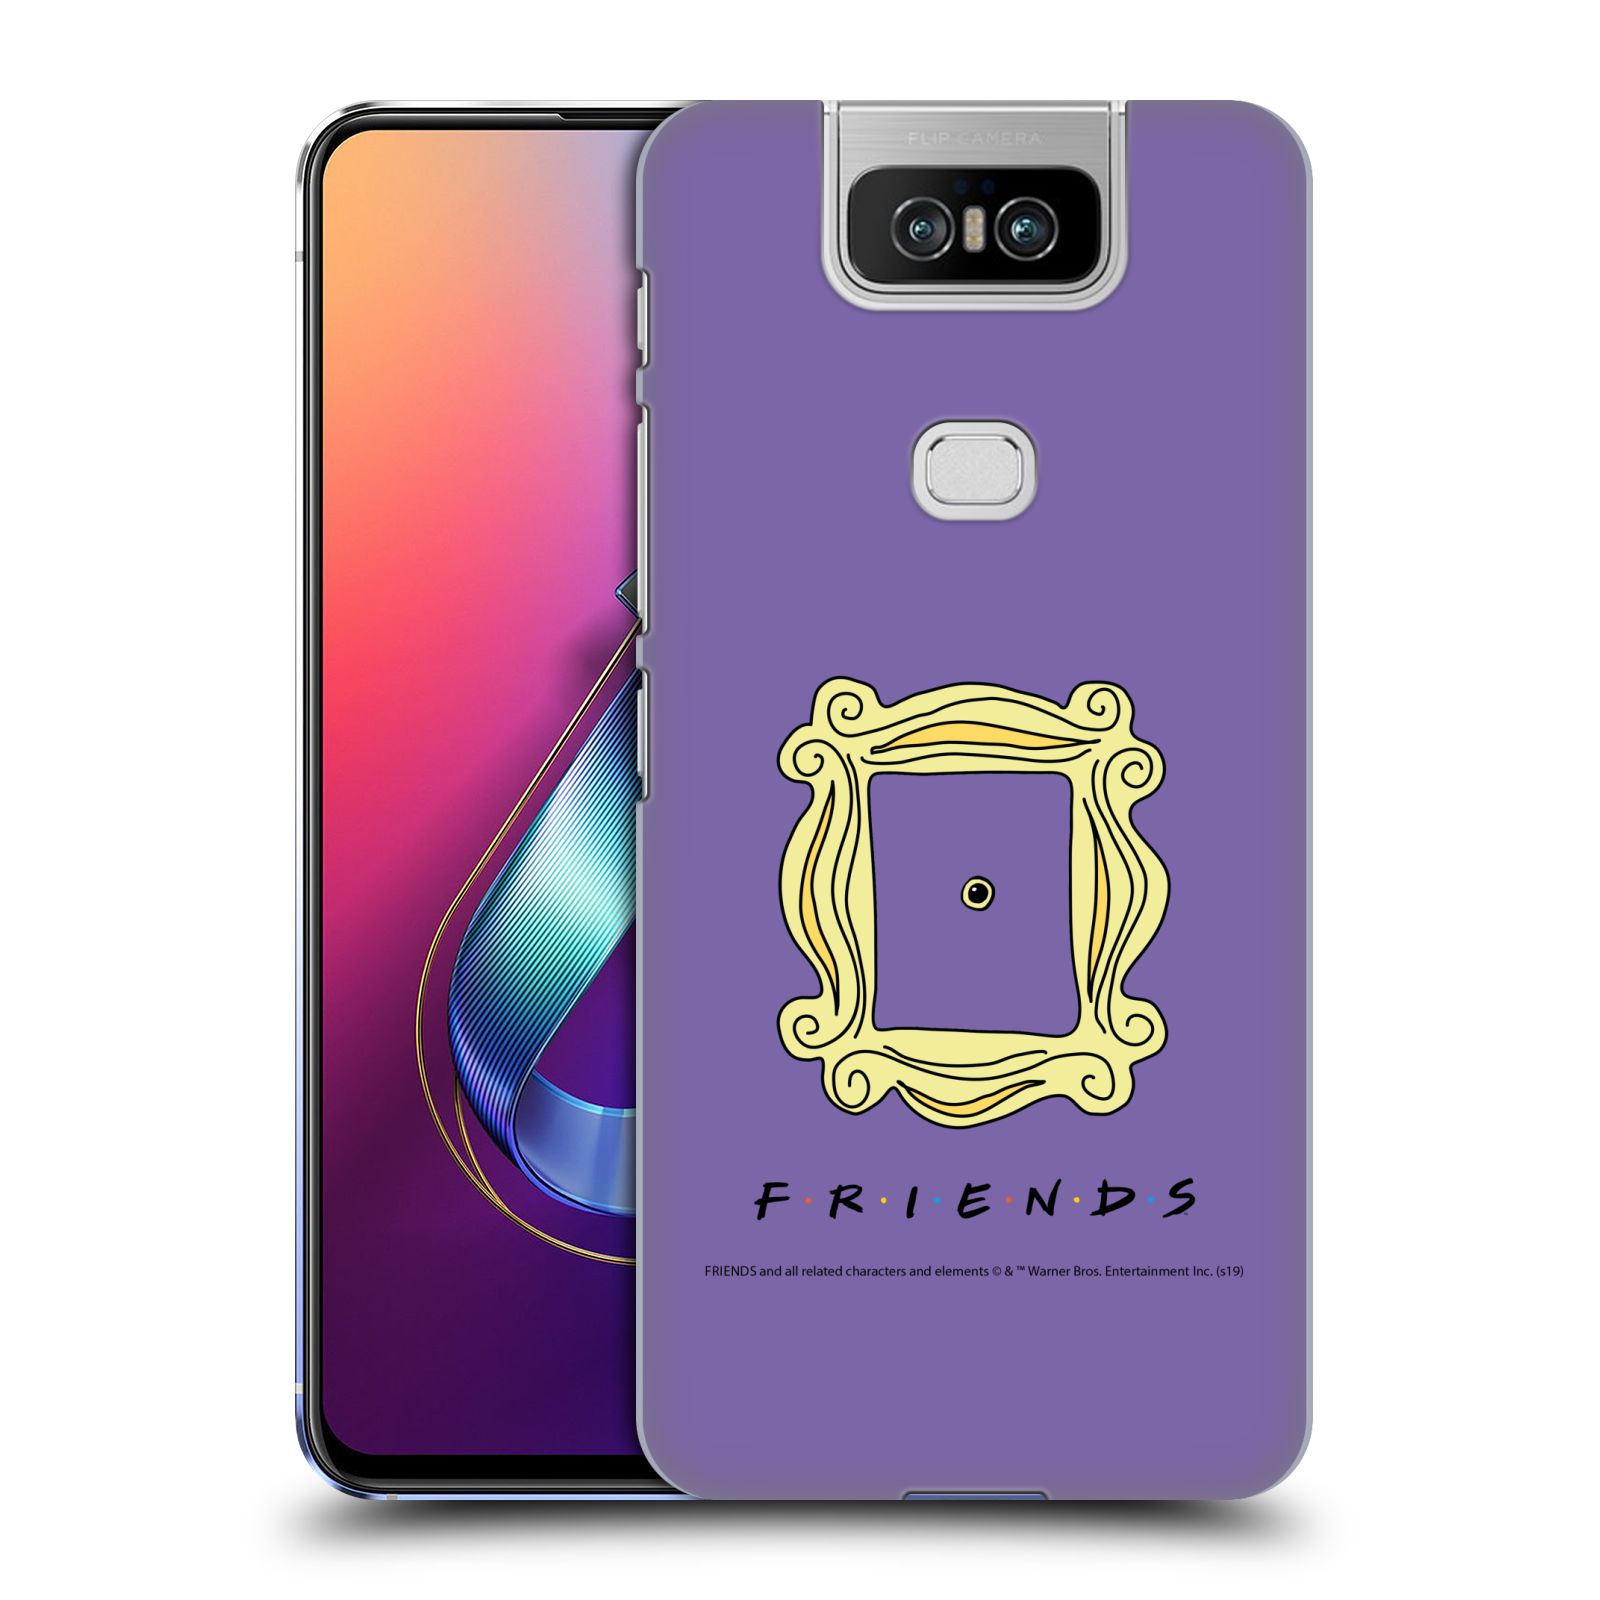 Pouzdro na mobil ASUS Zenfone 6 ZS630KL - HEAD CASE - Seriál Přátelé - rám obrazu kukátko